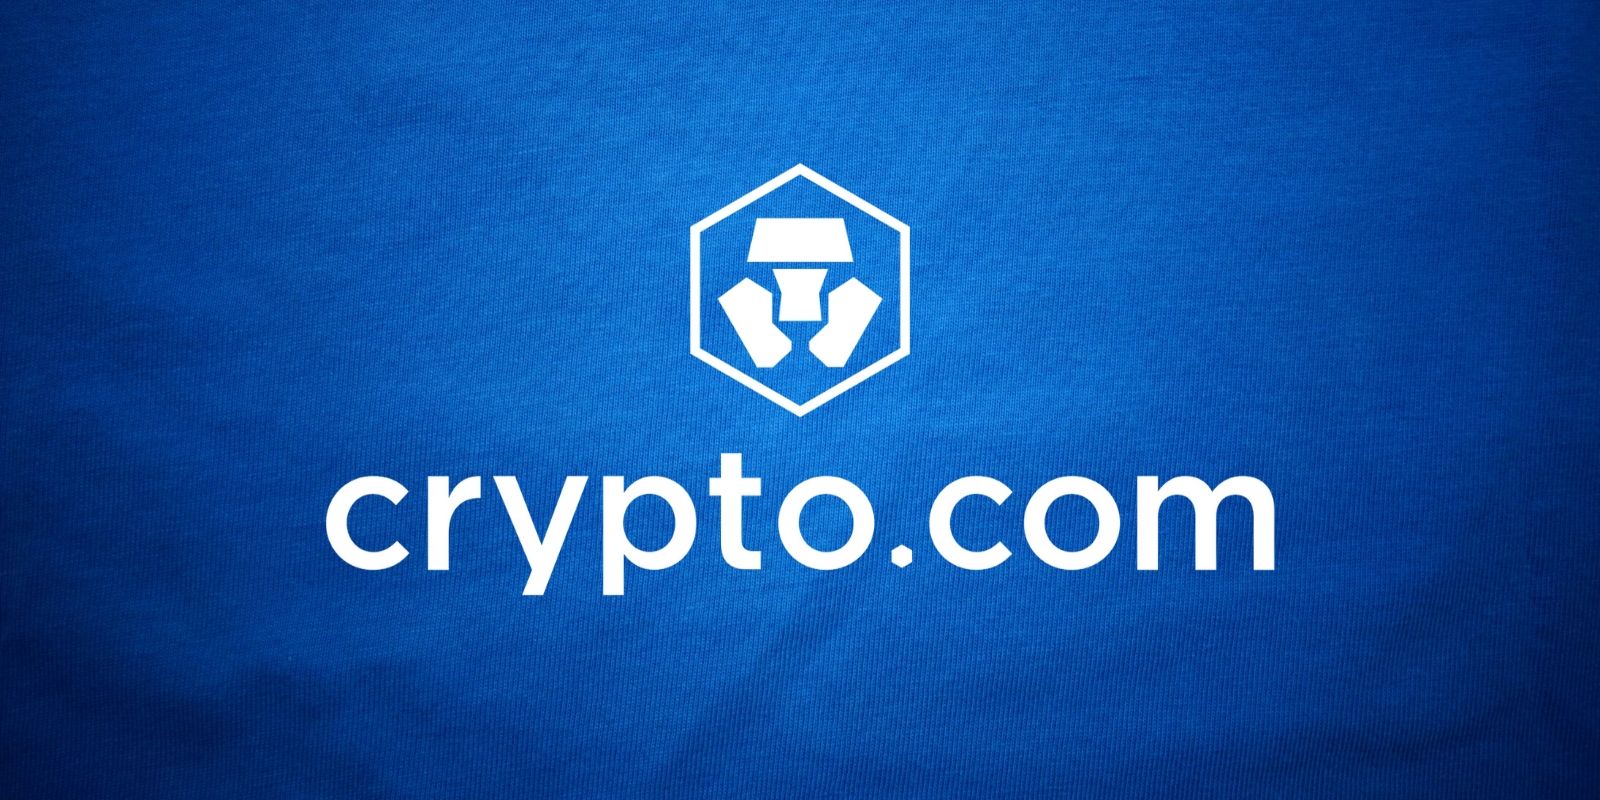 Crypto.com Crypto-monnaie en Chaque Wallet 30